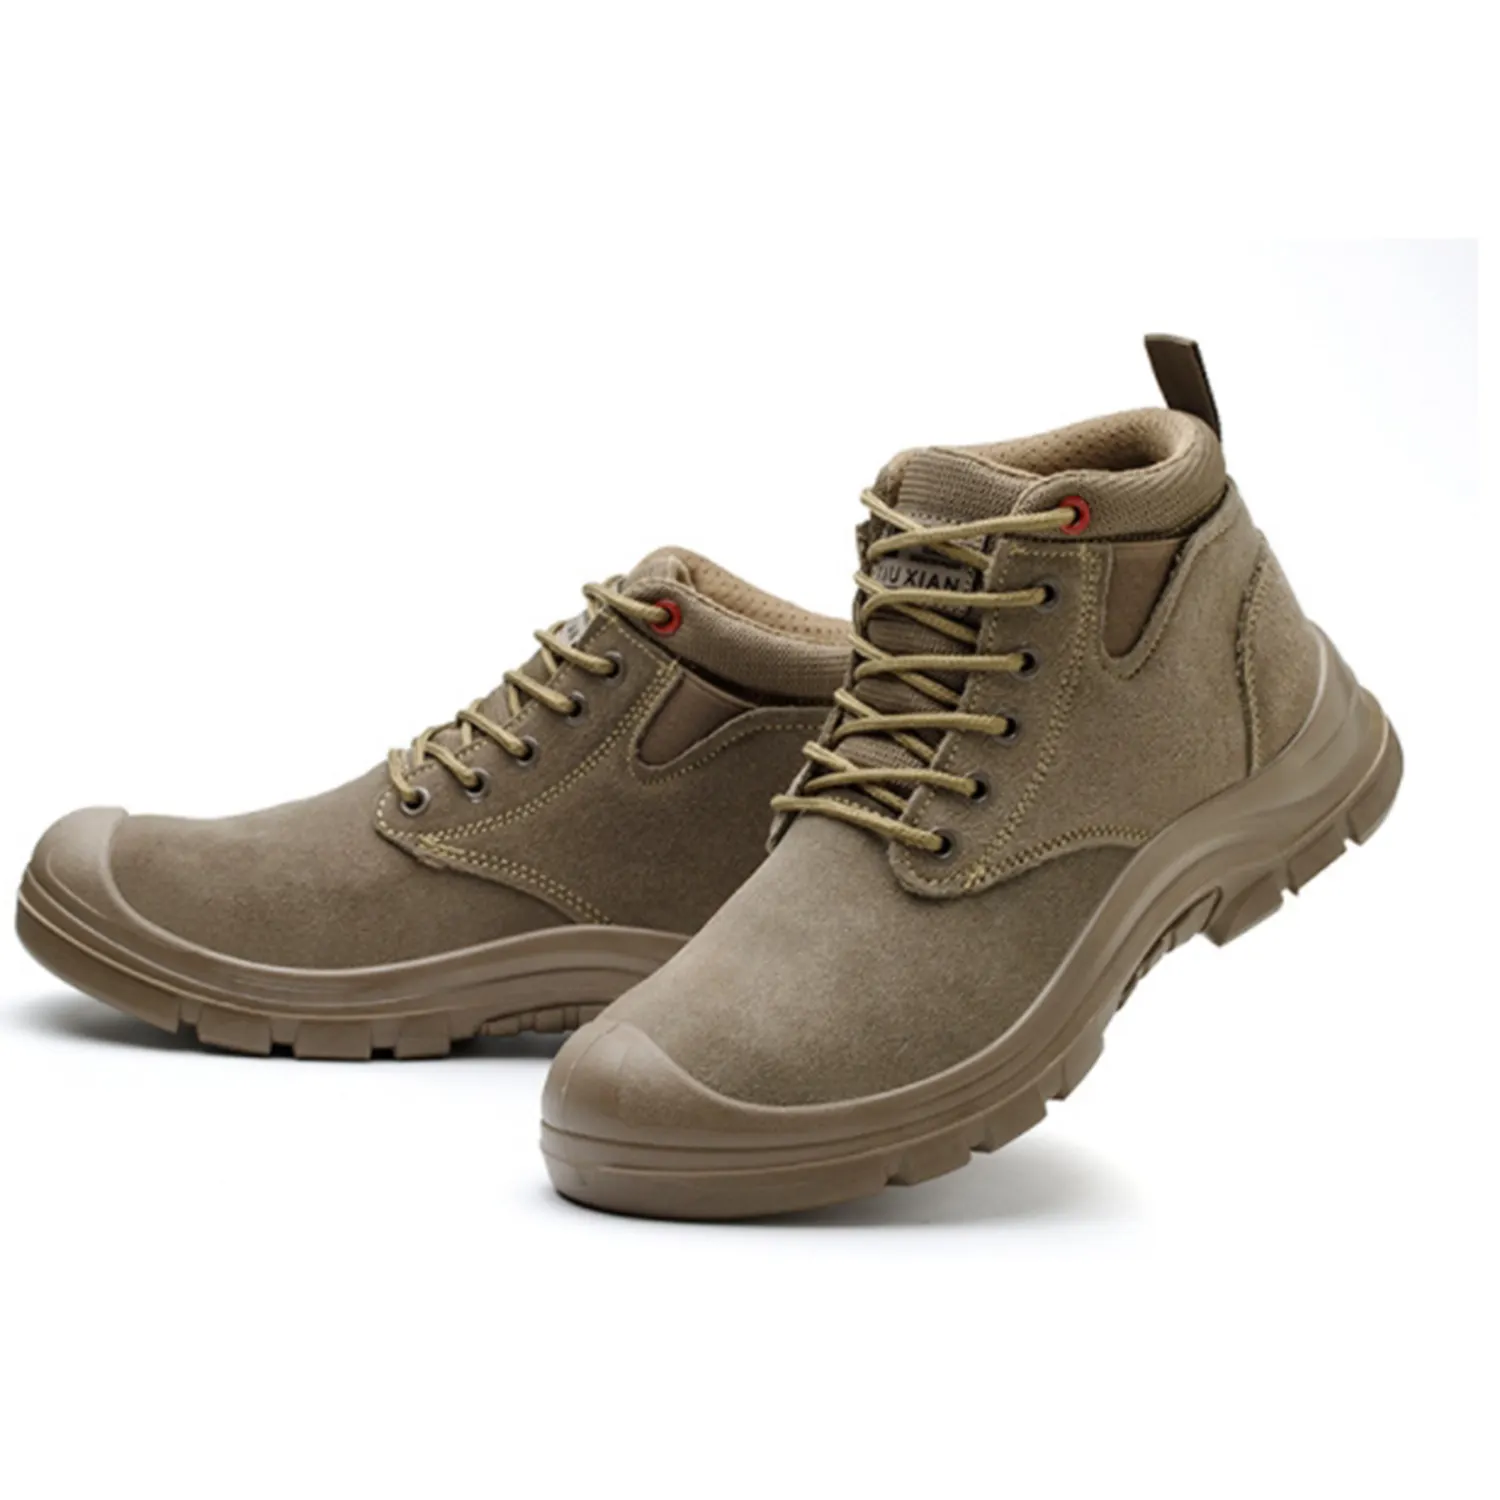 Yüksek kaliteli endüstriyel çift yoğunluklu hafif moda düşük kesim marka çelik ayak iş güvenliği ayakkabıları